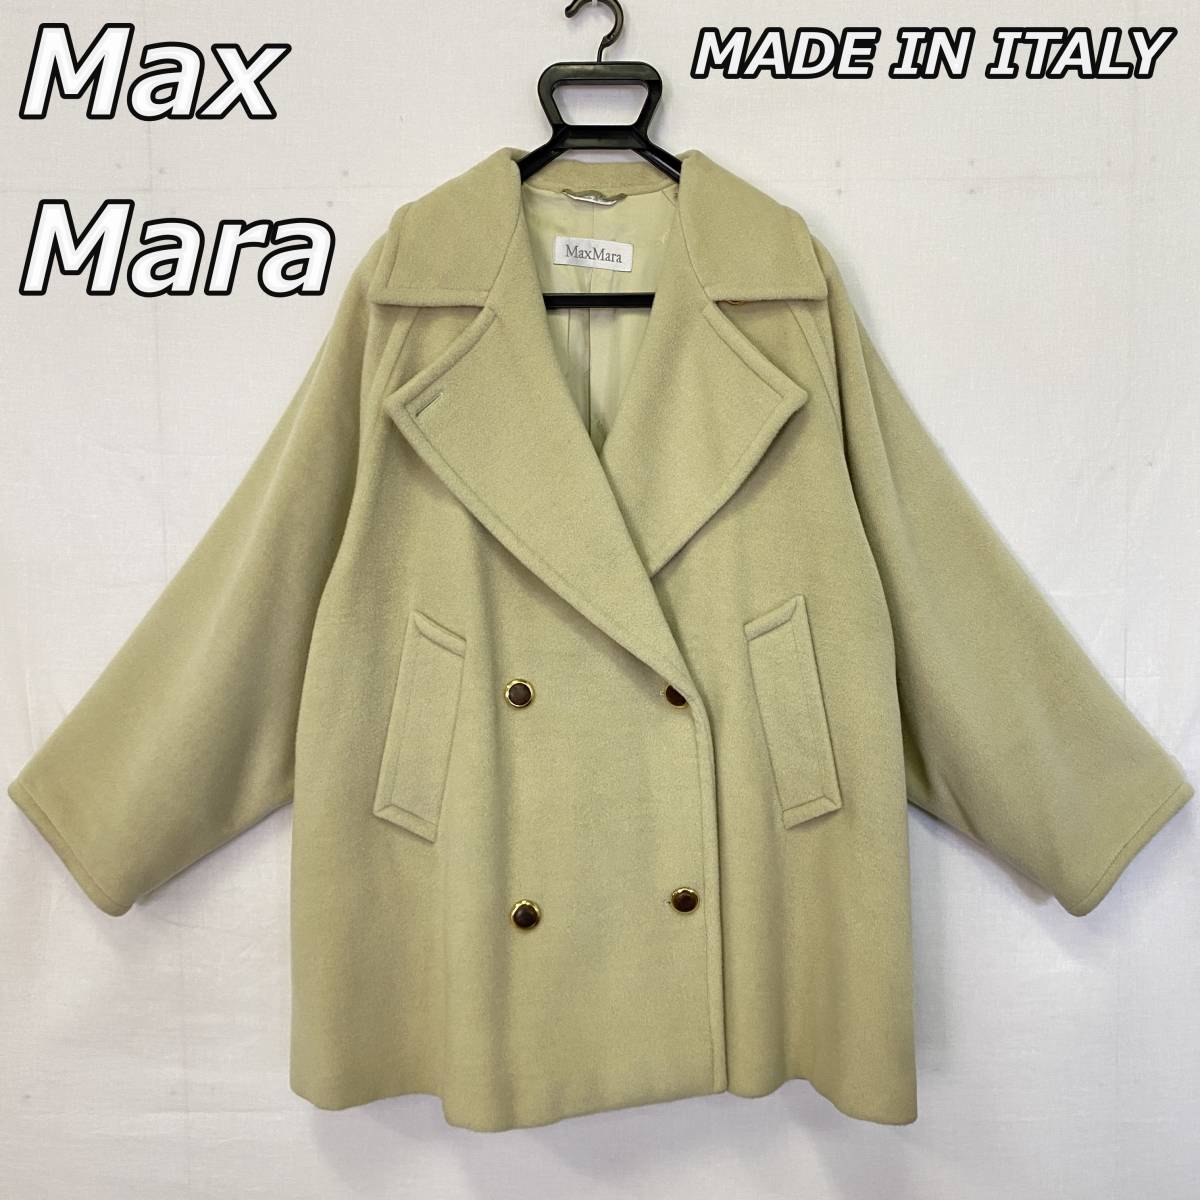 【Max Mara】マックスマーラ MADE IN ITALY イタリア製 カシミヤ混 オーバーサイズ ピーコート P ダブル ウール ジャケット  D-TK-367